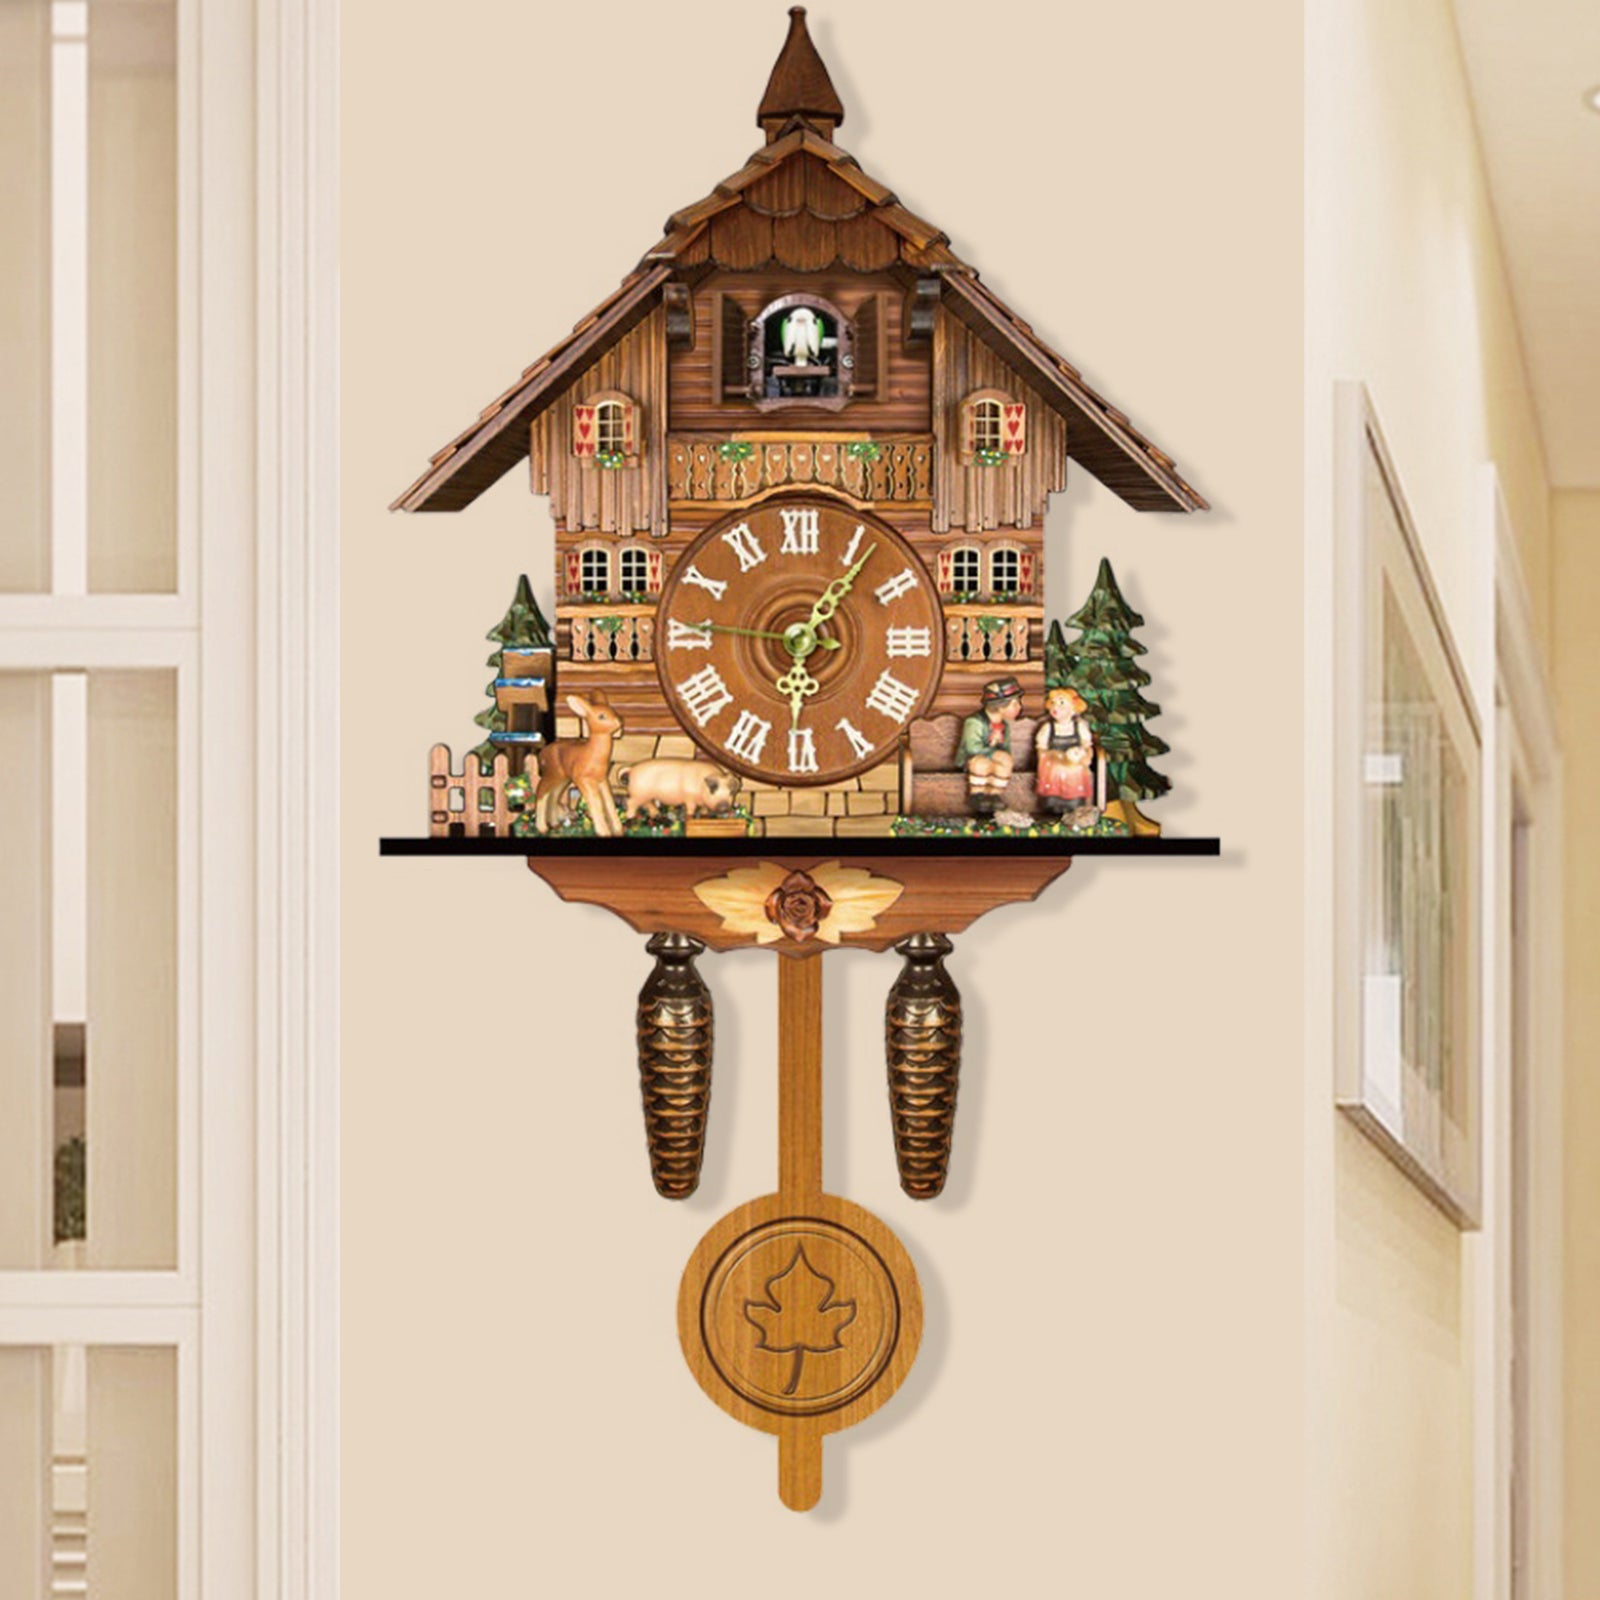 Orologio a cucù 25×10×46 cm Orologio in legno retrò Orologio dalla Foresta Nera Decorazioni per la casa Regalo squisito